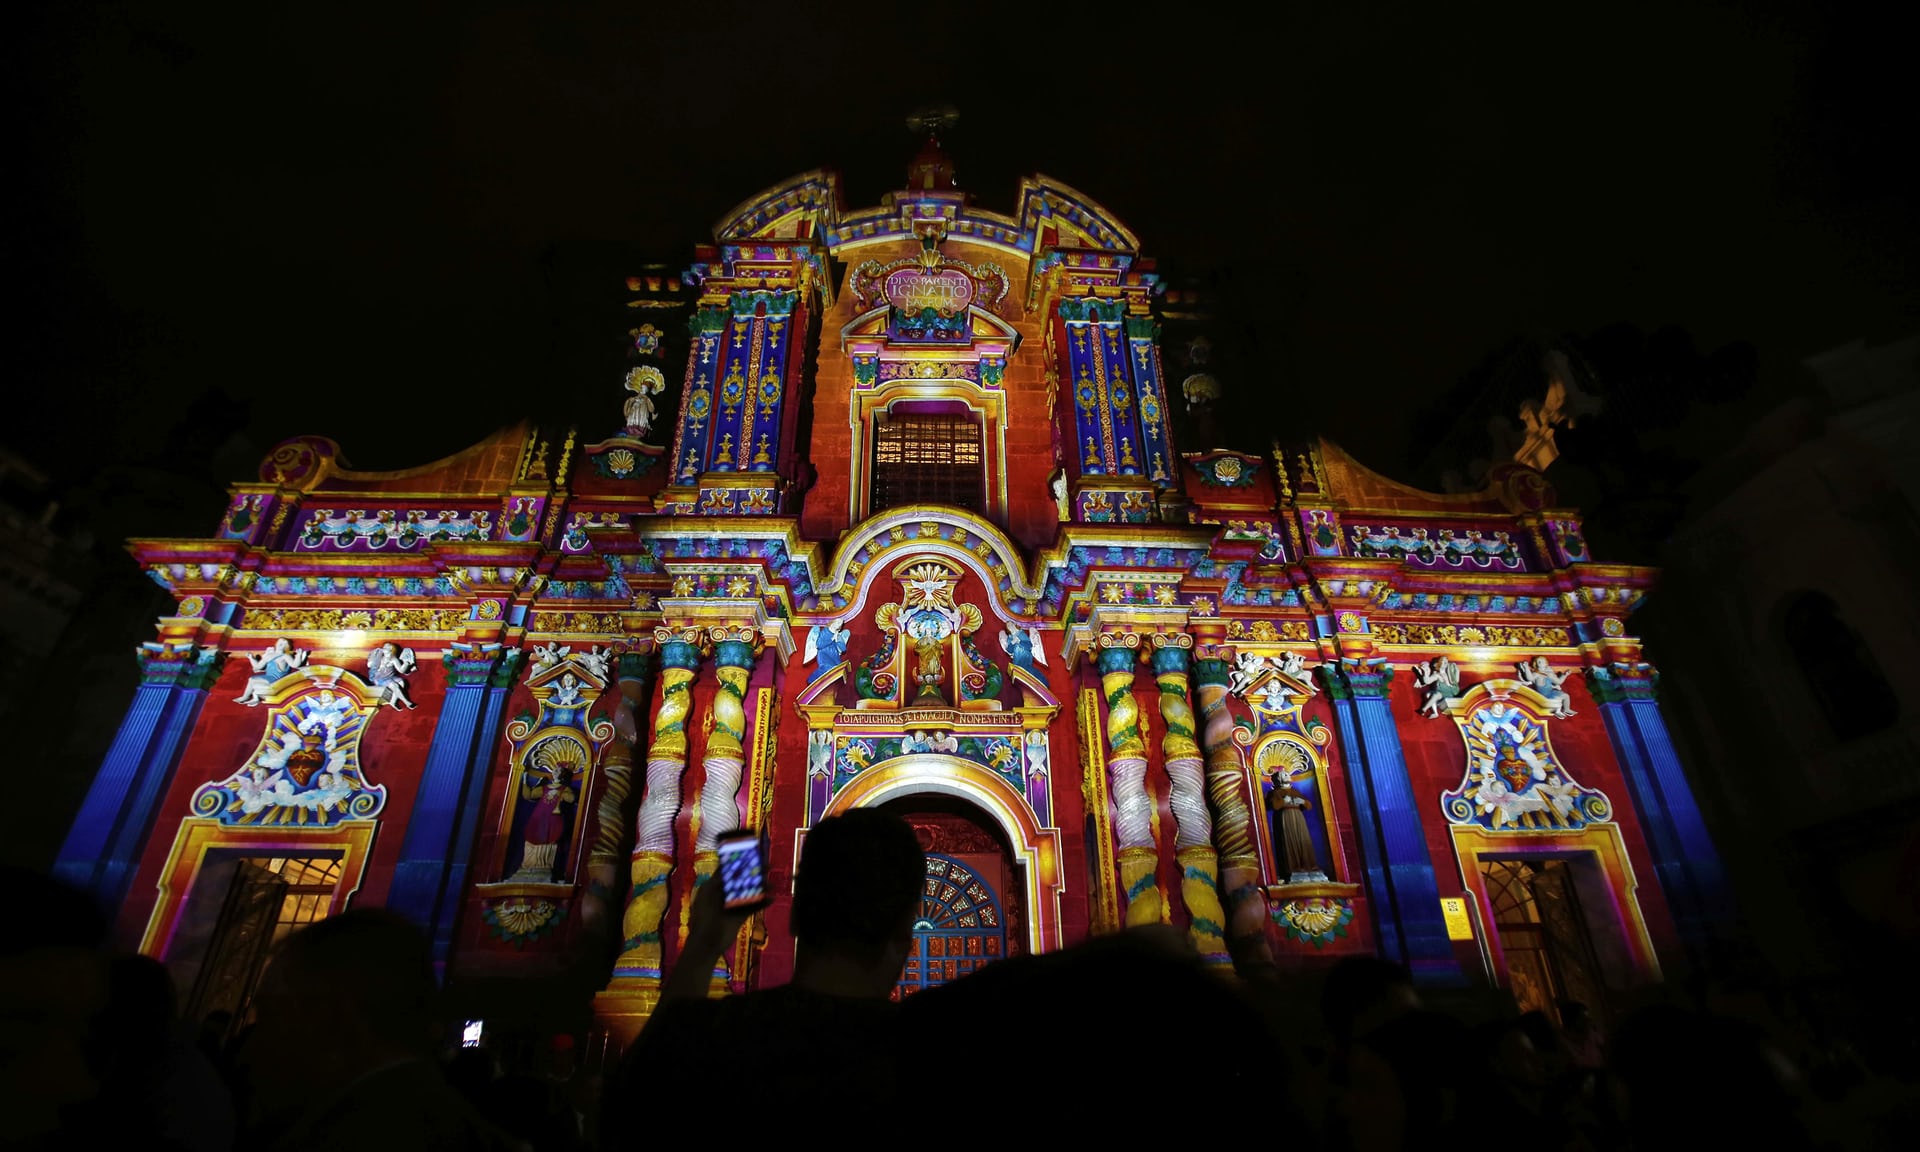 Illuminated churches in Quito